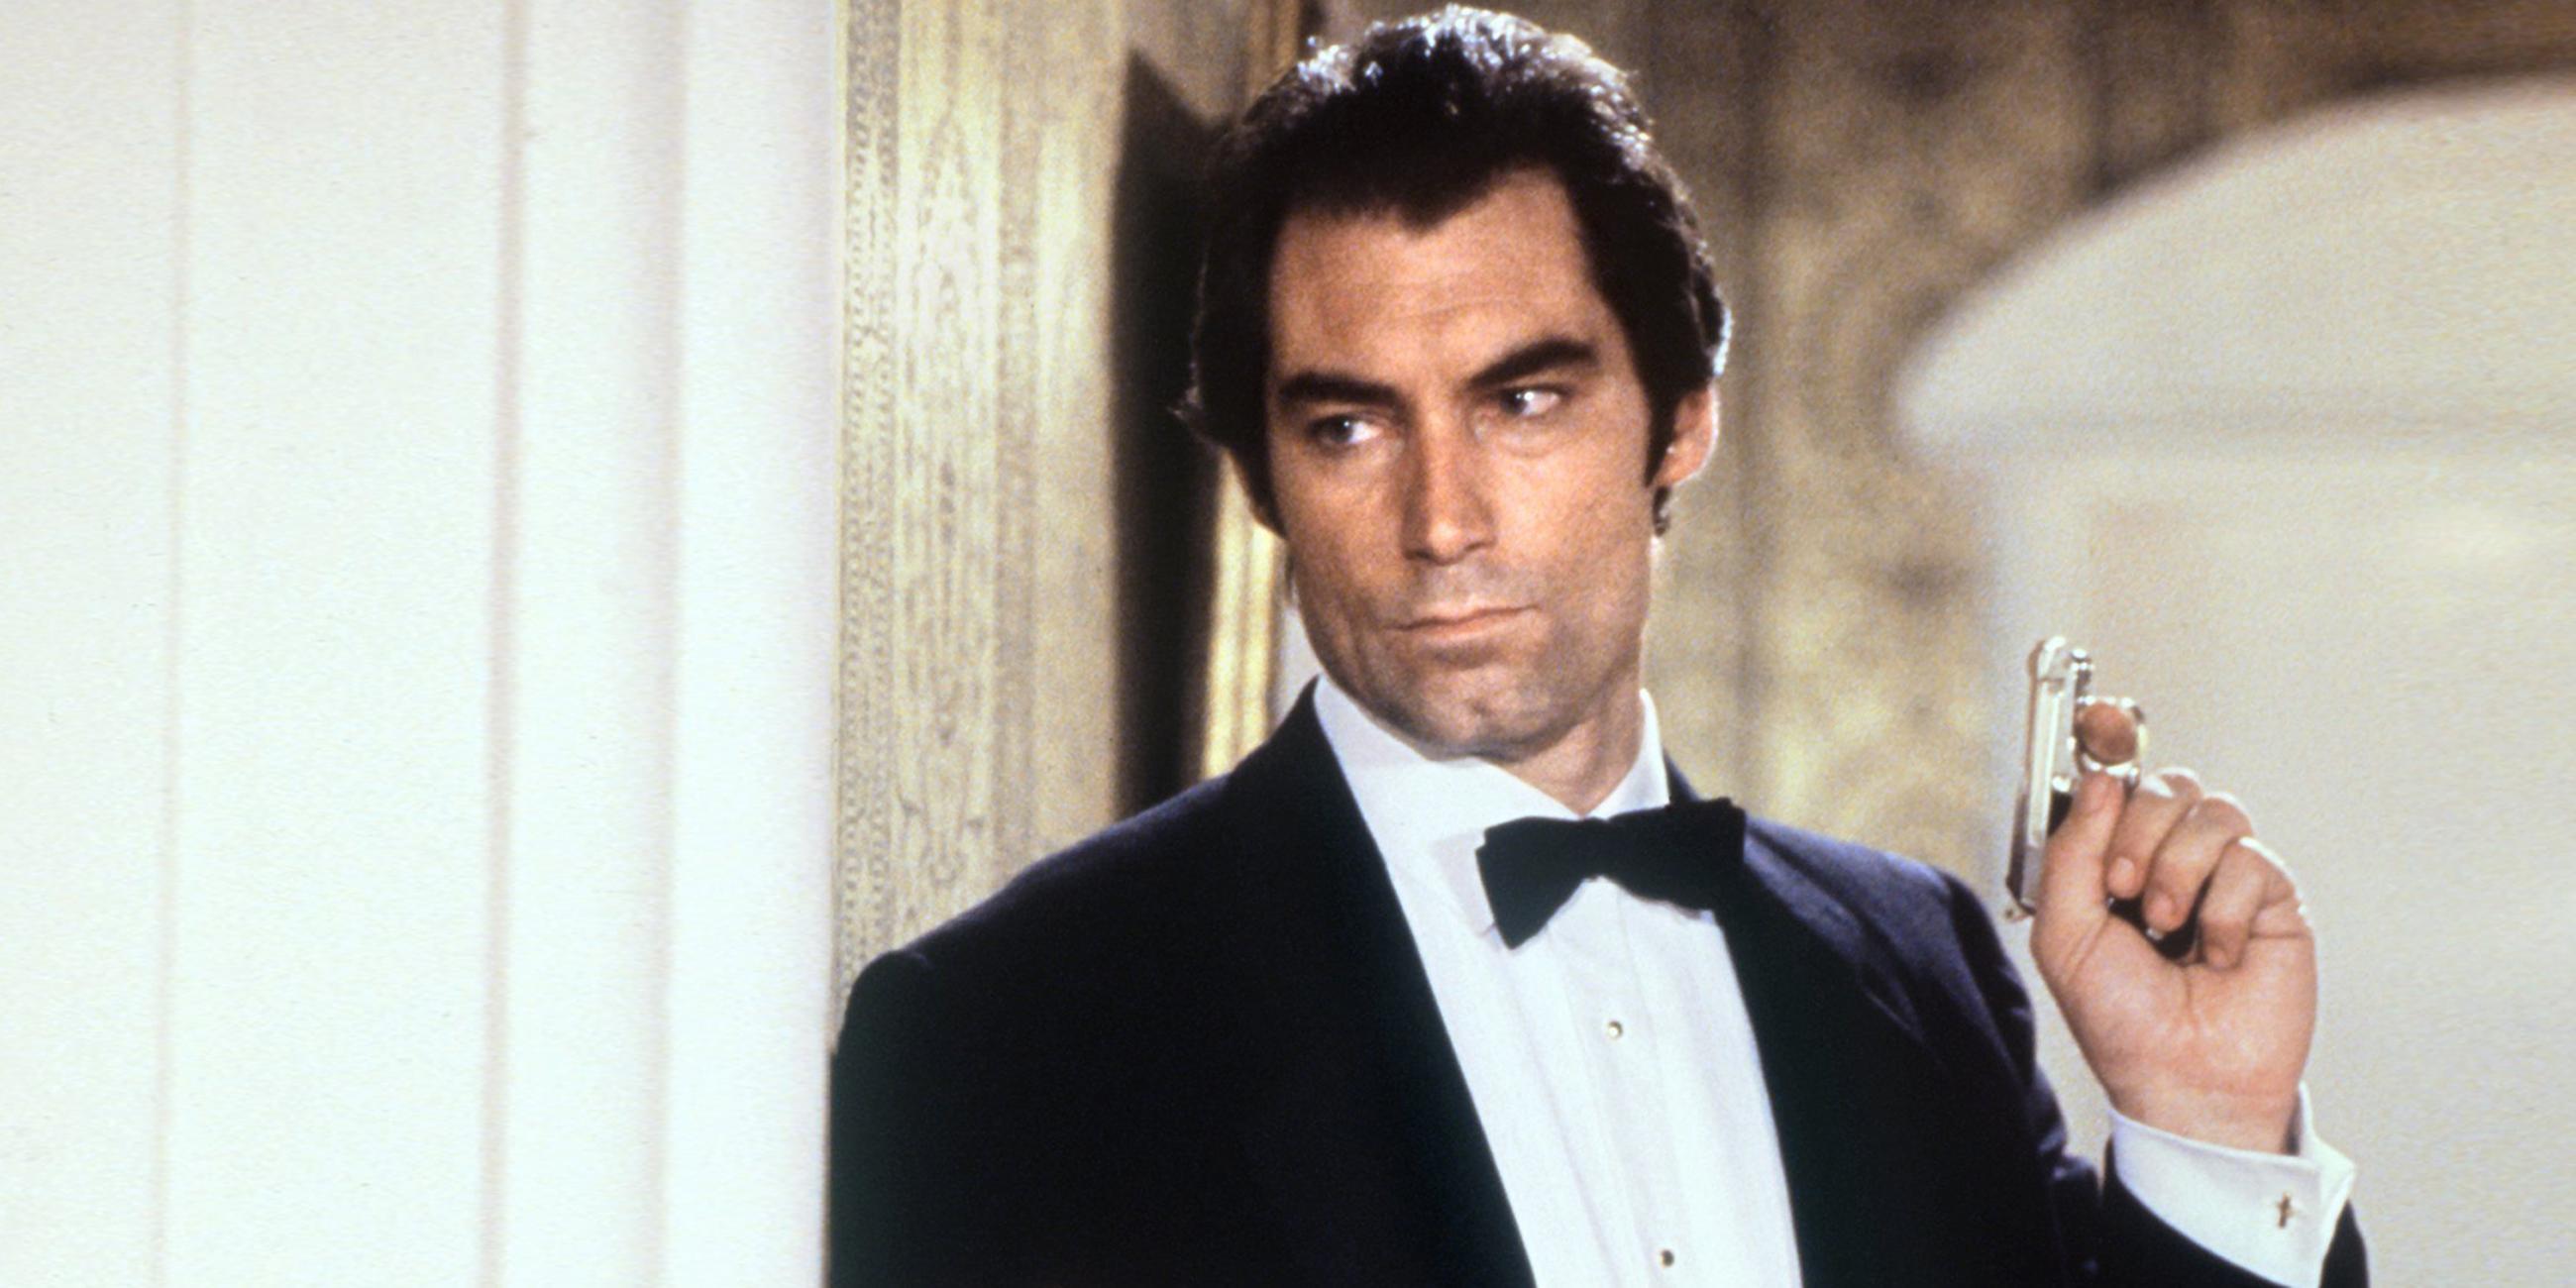 Archiv: Timothy Dalton als James Bond in einer Szen des Film "Lizent zum Töten" aus dem Jahr 1988